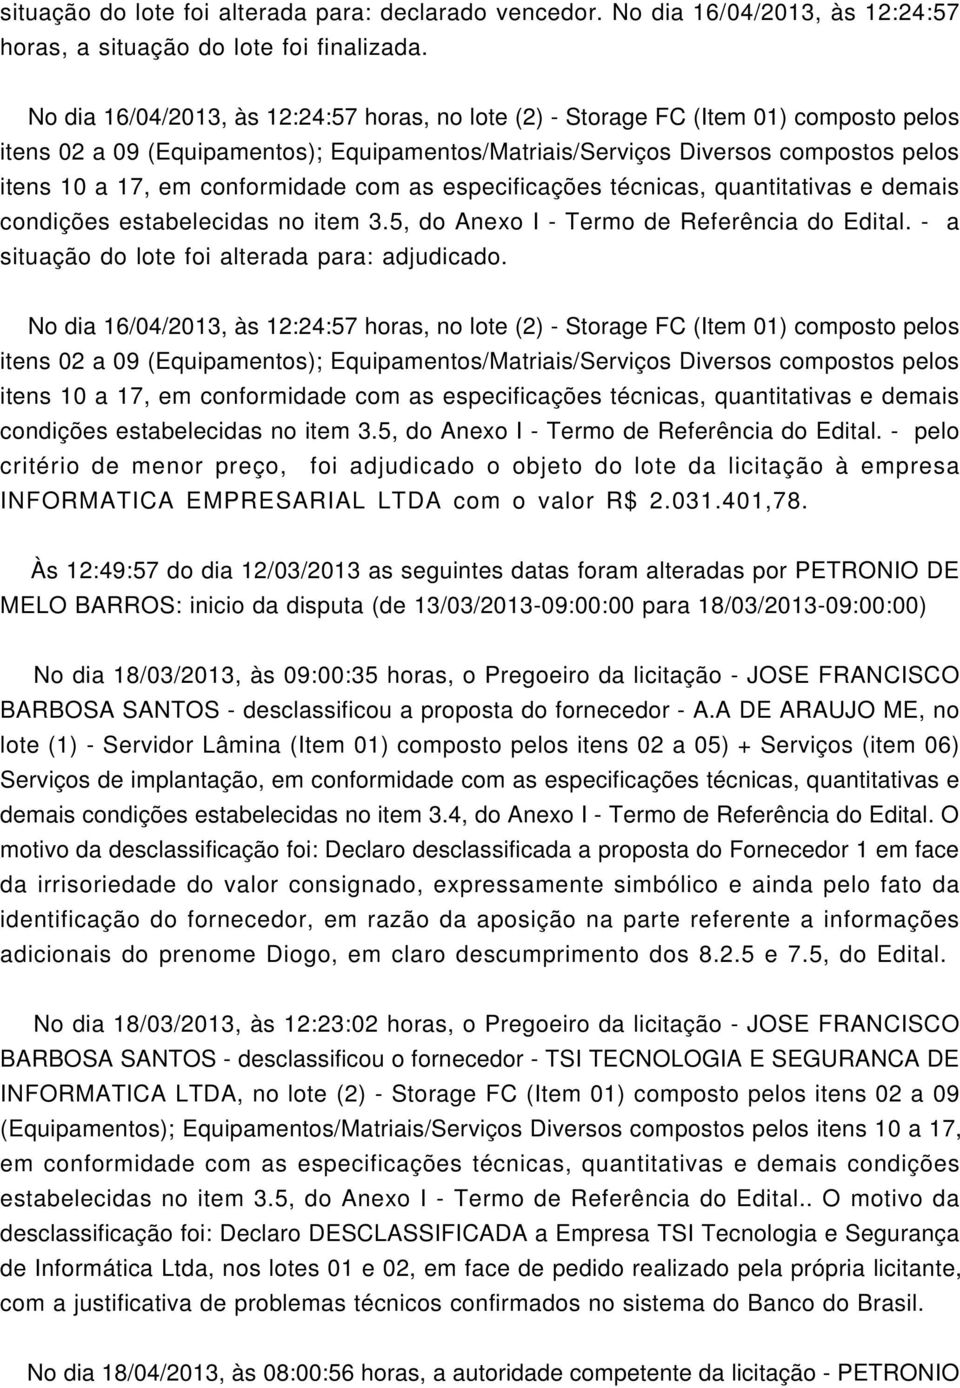 No dia 16/04/2013, às 12:24:57 horas, no lote (2) - Storage FC (Item 01) composto pelos condições estabelecidas no item 3.5, do Anexo I - Termo de Referência do Edital.